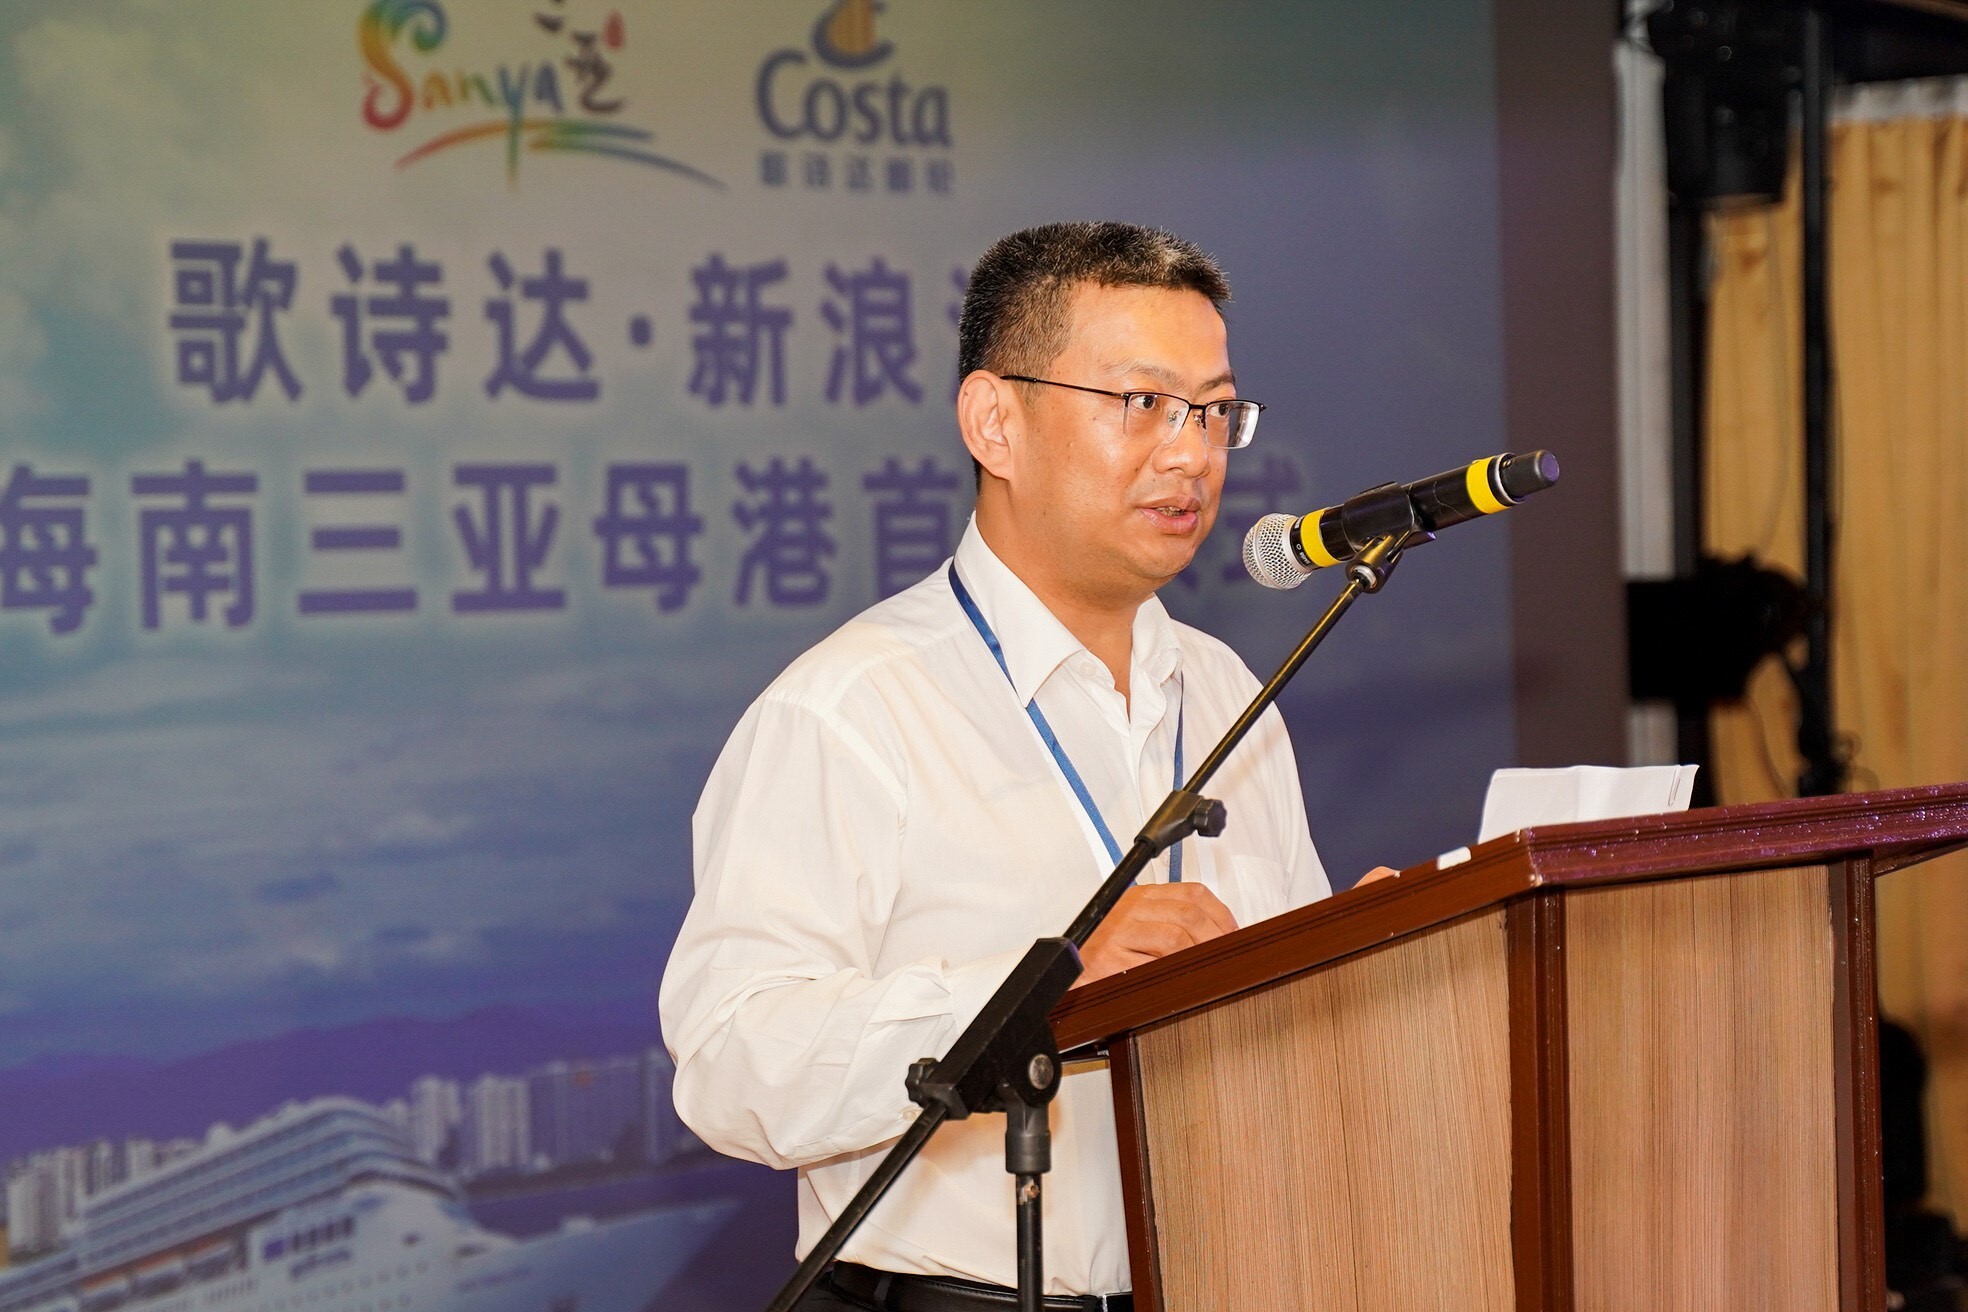 海南省旅游和文化广电体育厅副厅长刘成发表讲话